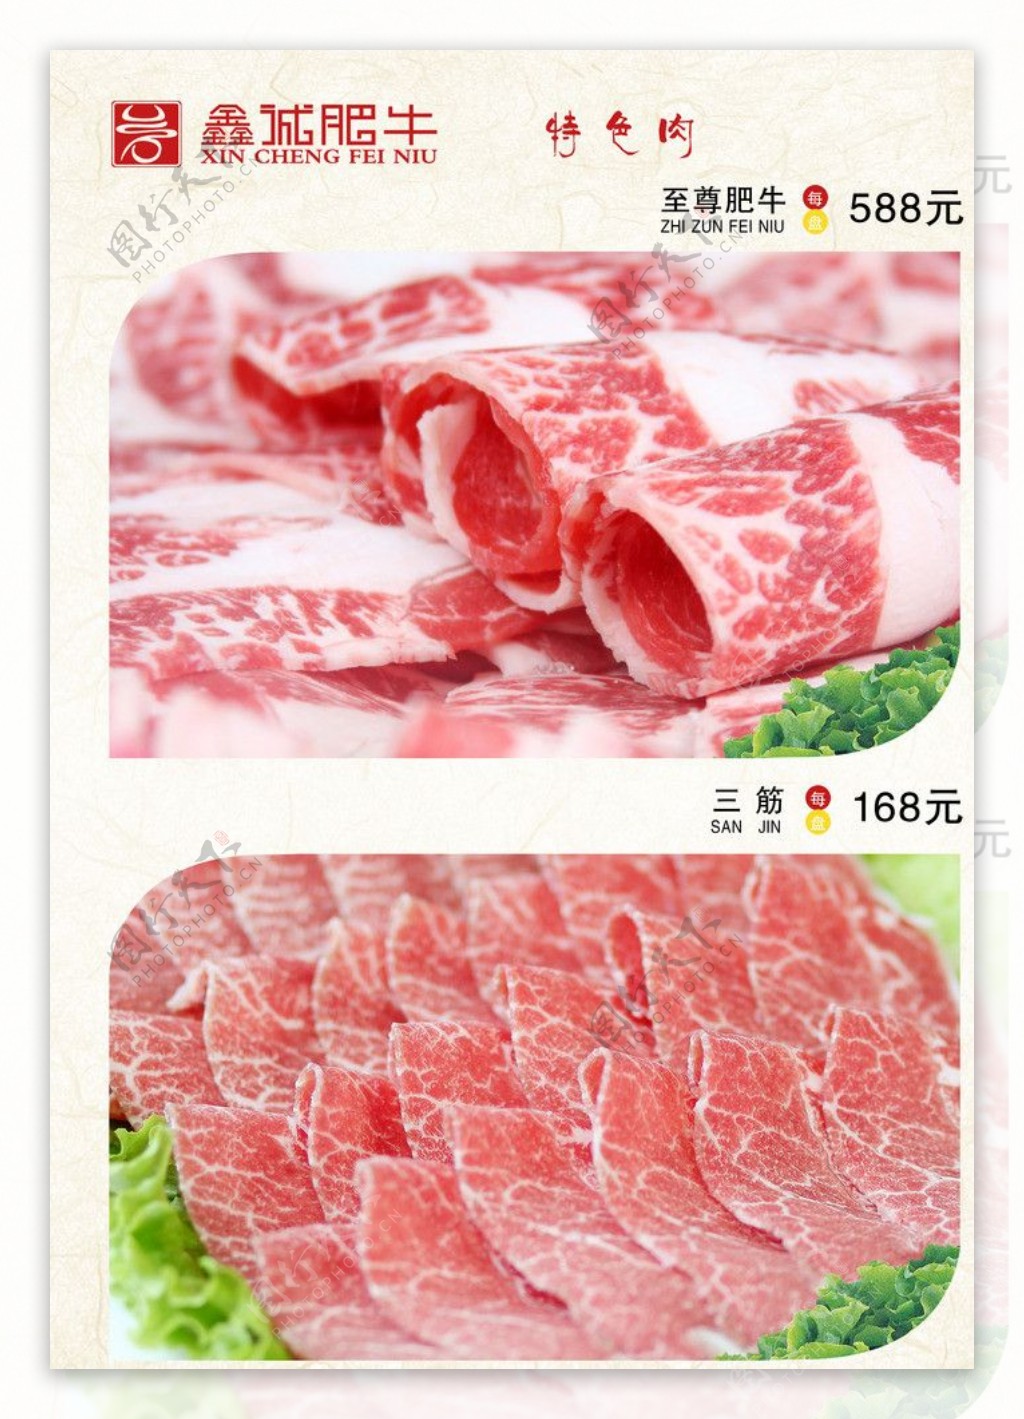 菜谱特价肉火锅图片